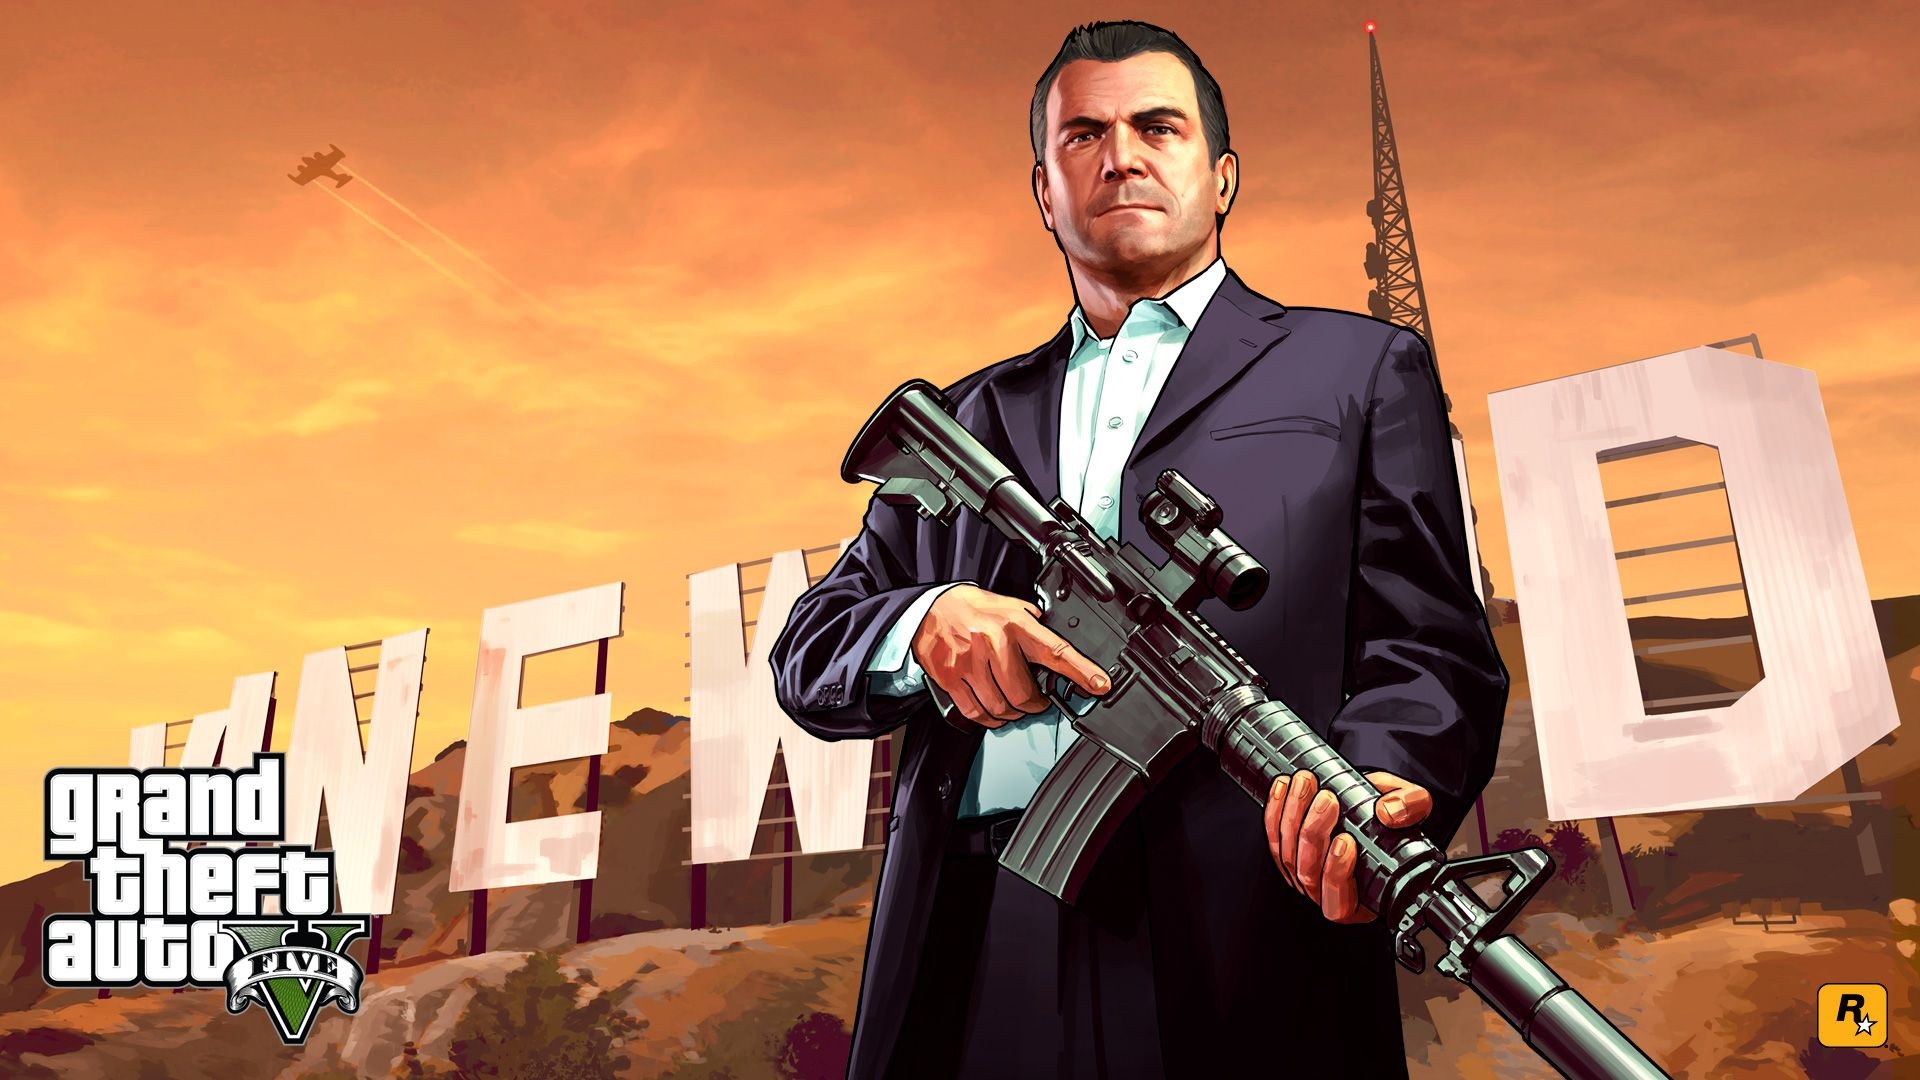 Grand Theft Auto 5 yaklaşık 190 milyon kopya sattı, Red Dead Redemption 2 ise 57 milyondan fazla kopya sattı - Dünyadan Güncel Teknoloji Haberleri